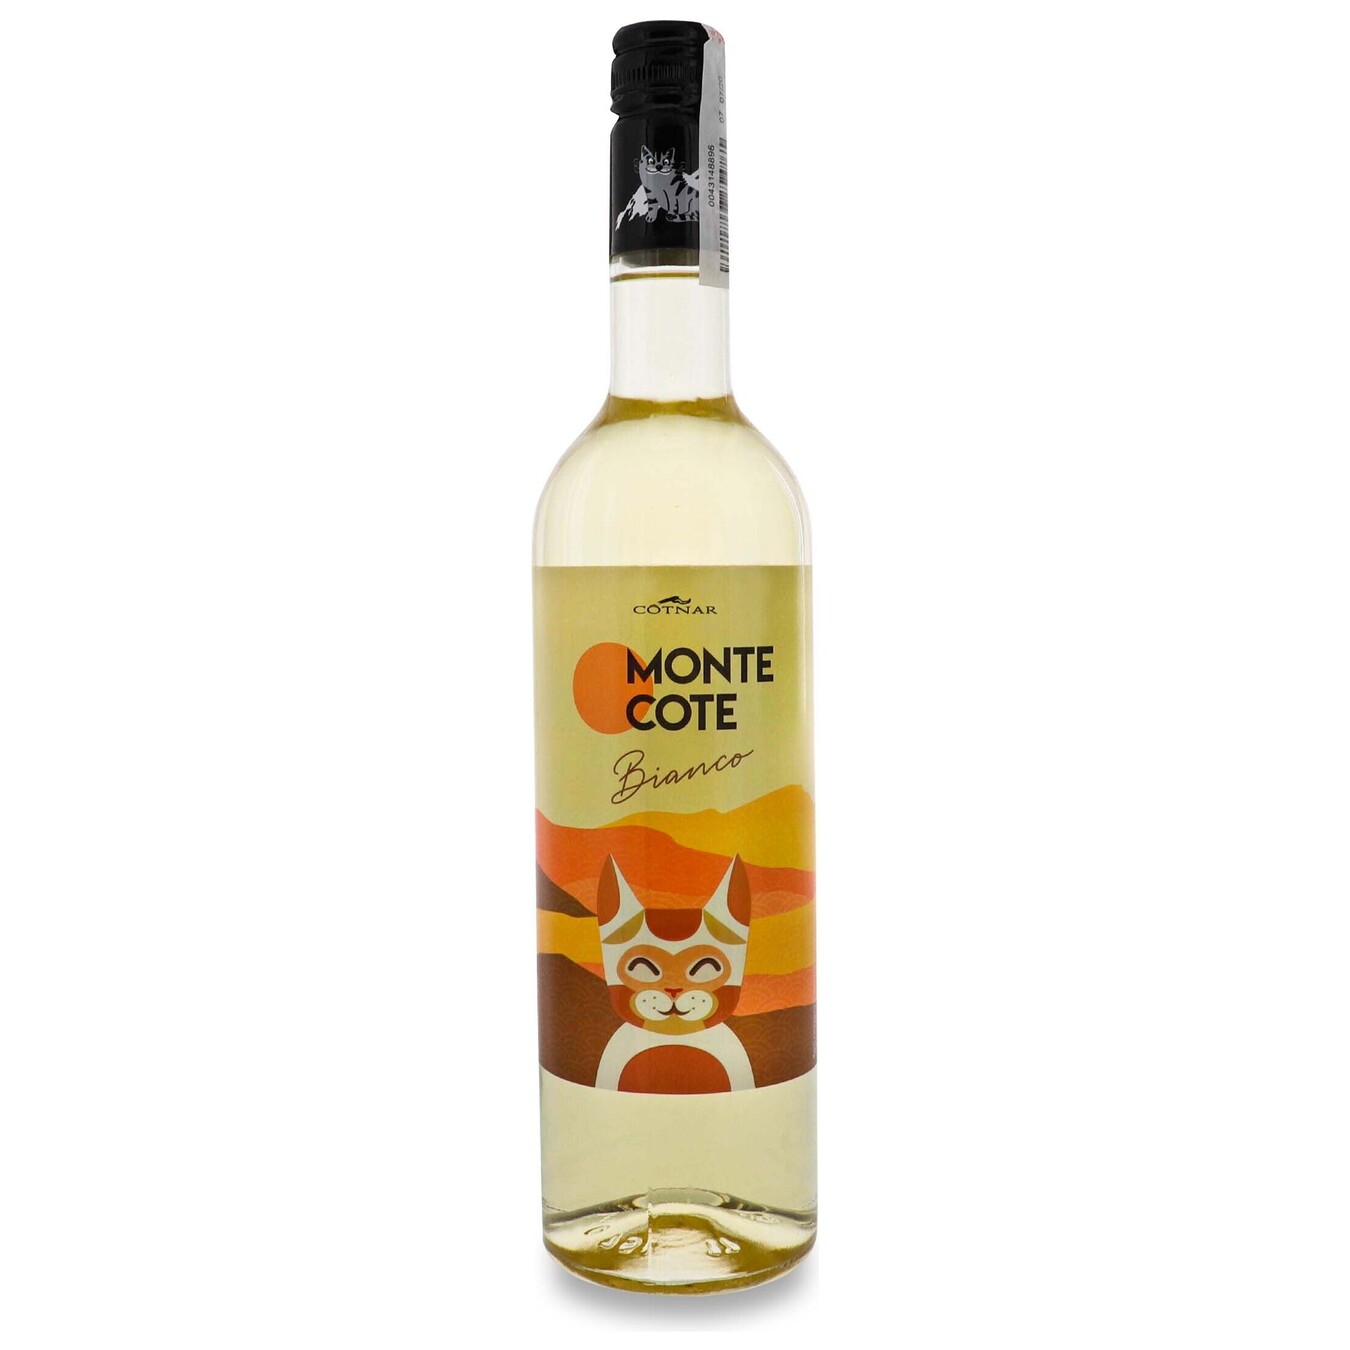 Cotnar Monte Cote Bianco semi-sweet white wine 12% 0.75 l